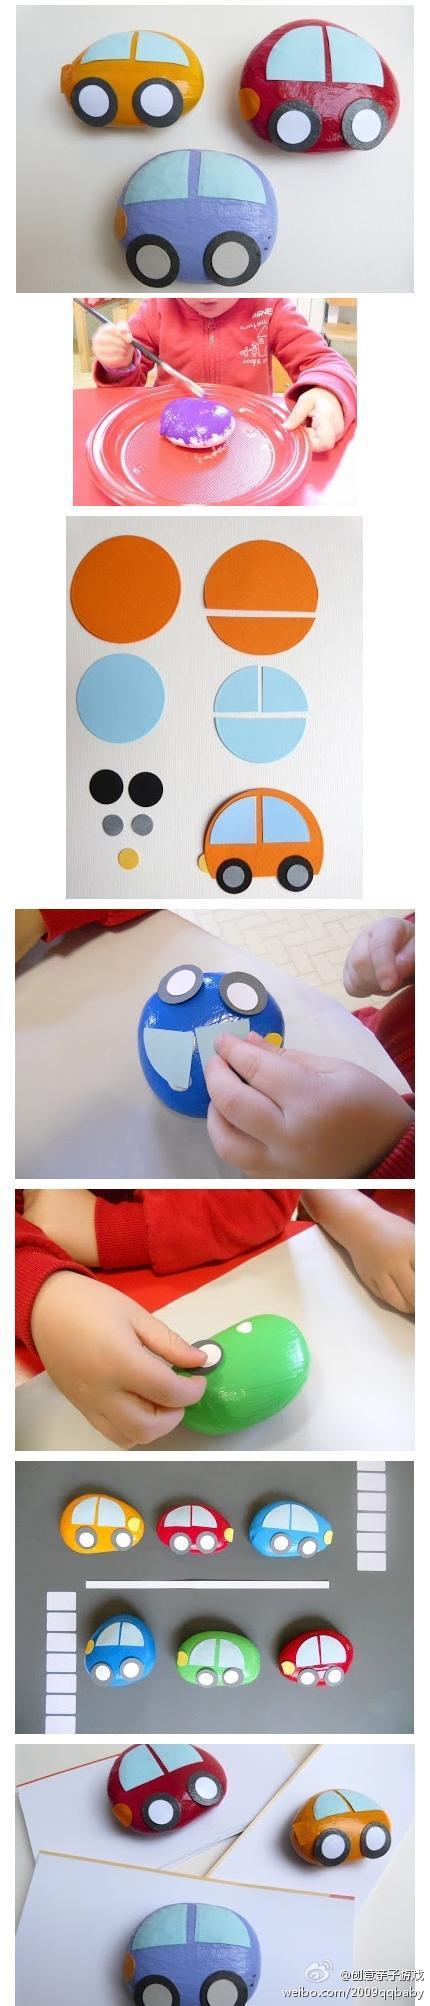 汽车总动员之石头小汽车：画石头的游戏绝对是孩子最爱的艺术活动之一，把小石头涂上各种颜色，用卡纸或海绵纸做车窗、轮子装饰。还可以在卡纸上画马路、道路，还可以做多多的小车，各式各样的车队。